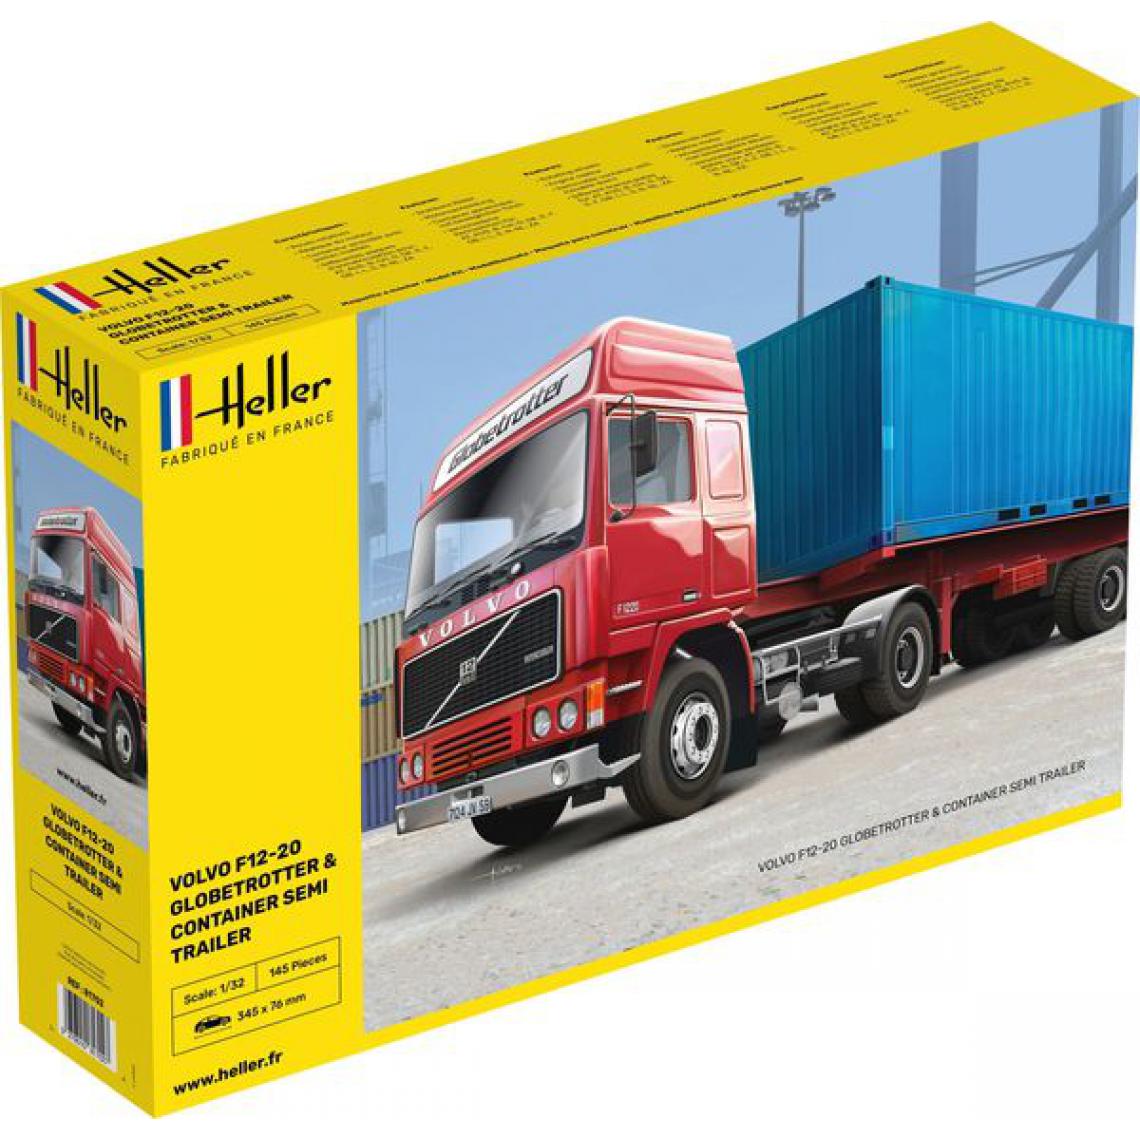 Heller - F12-20 Globetrotter & Container semi trailer - 1:32e - Heller - Accessoires et pièces